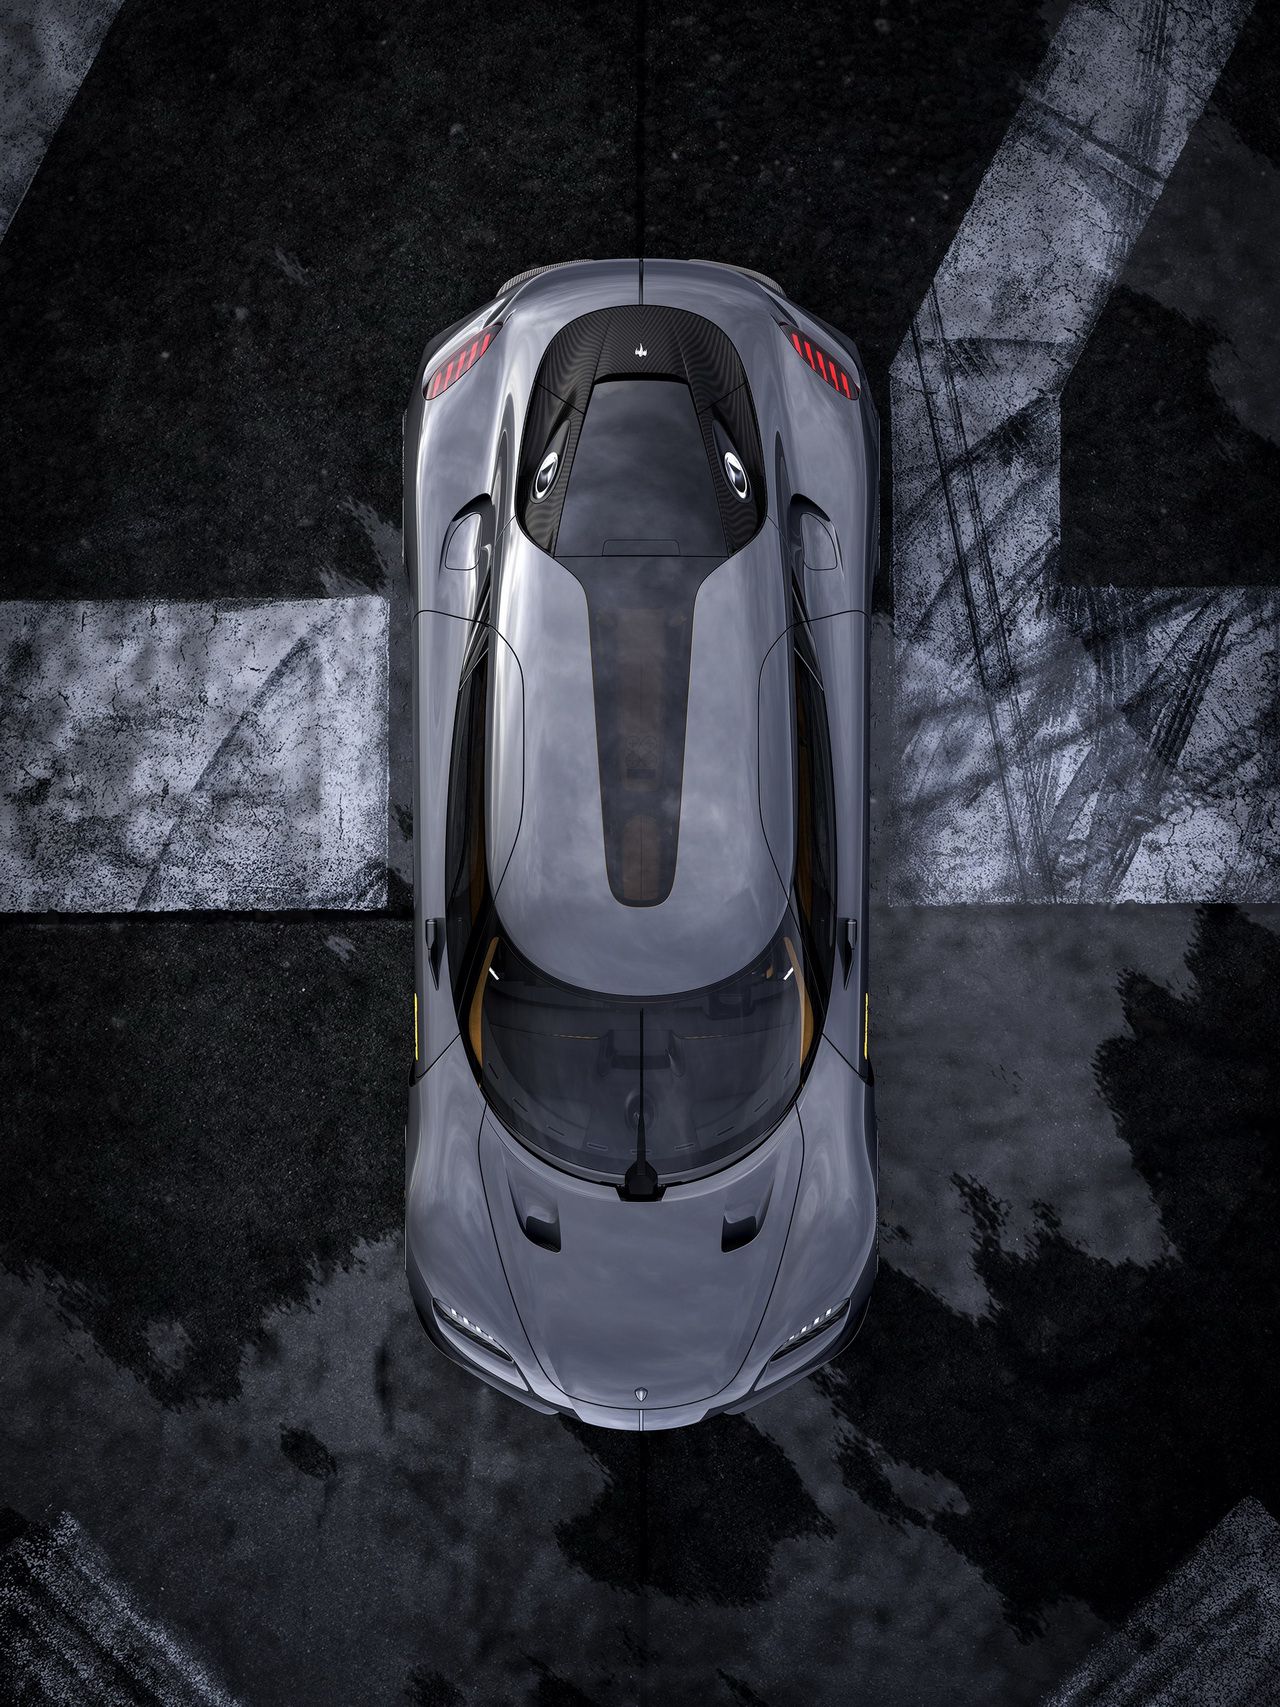 四座三缸，来自瑞典的Koenigsegg Gemera超级跑车